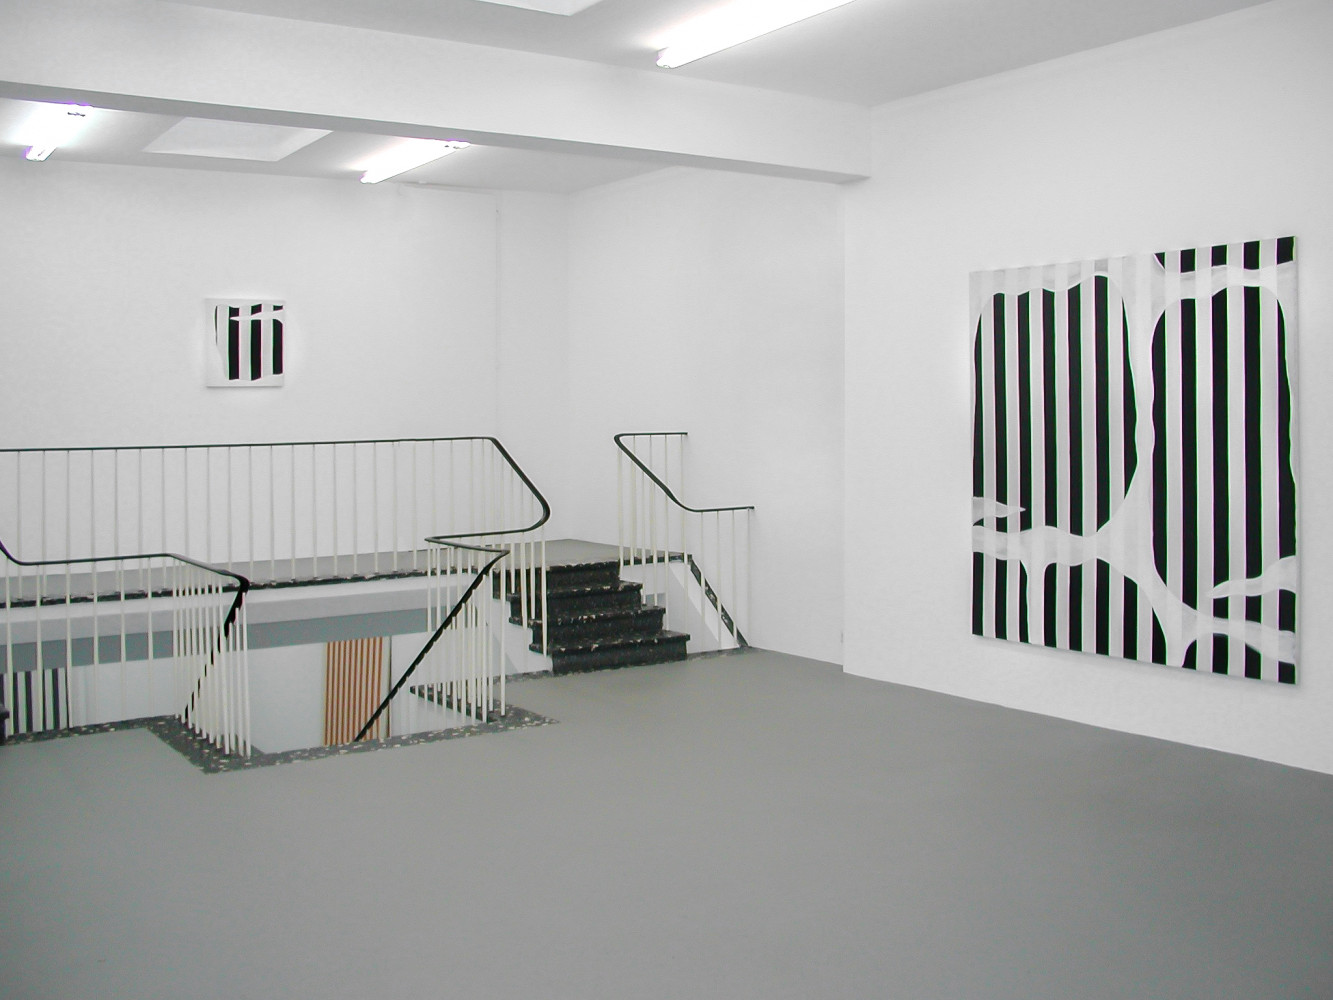 Daniel Buren, ‘Peinture blanche 1965 - 1966’, Installation view, Buchmann Galerie Köln, 2002